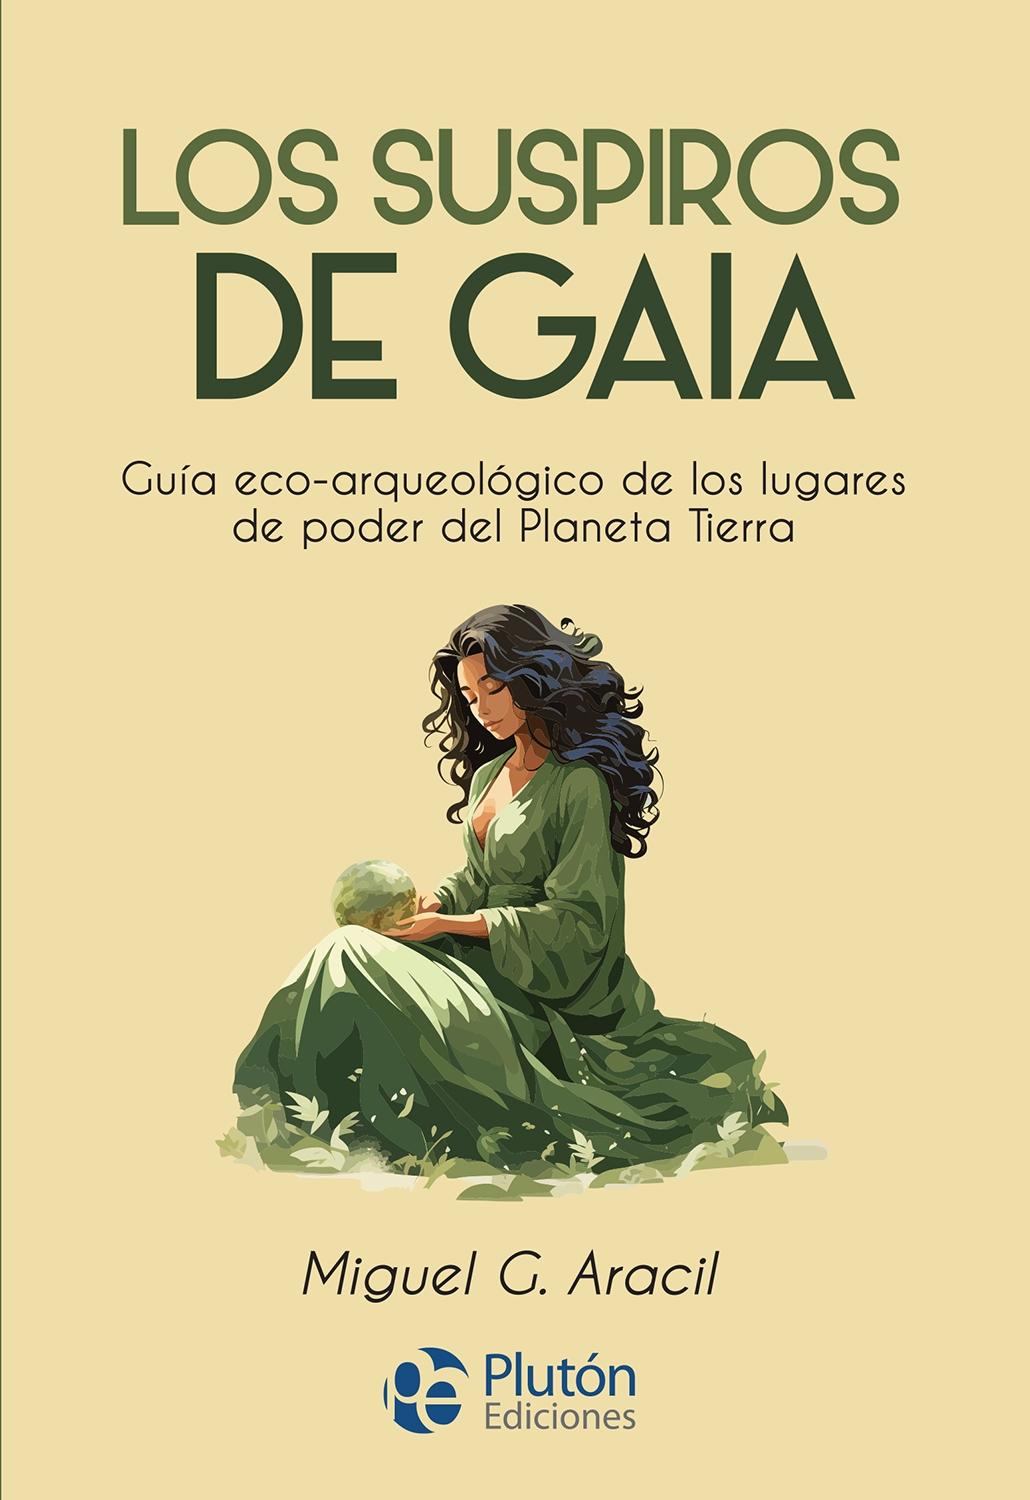 Suspiros de Gaia, Los "Guía eco-arqueológico de los lugares de poder del Planeta Tierra"